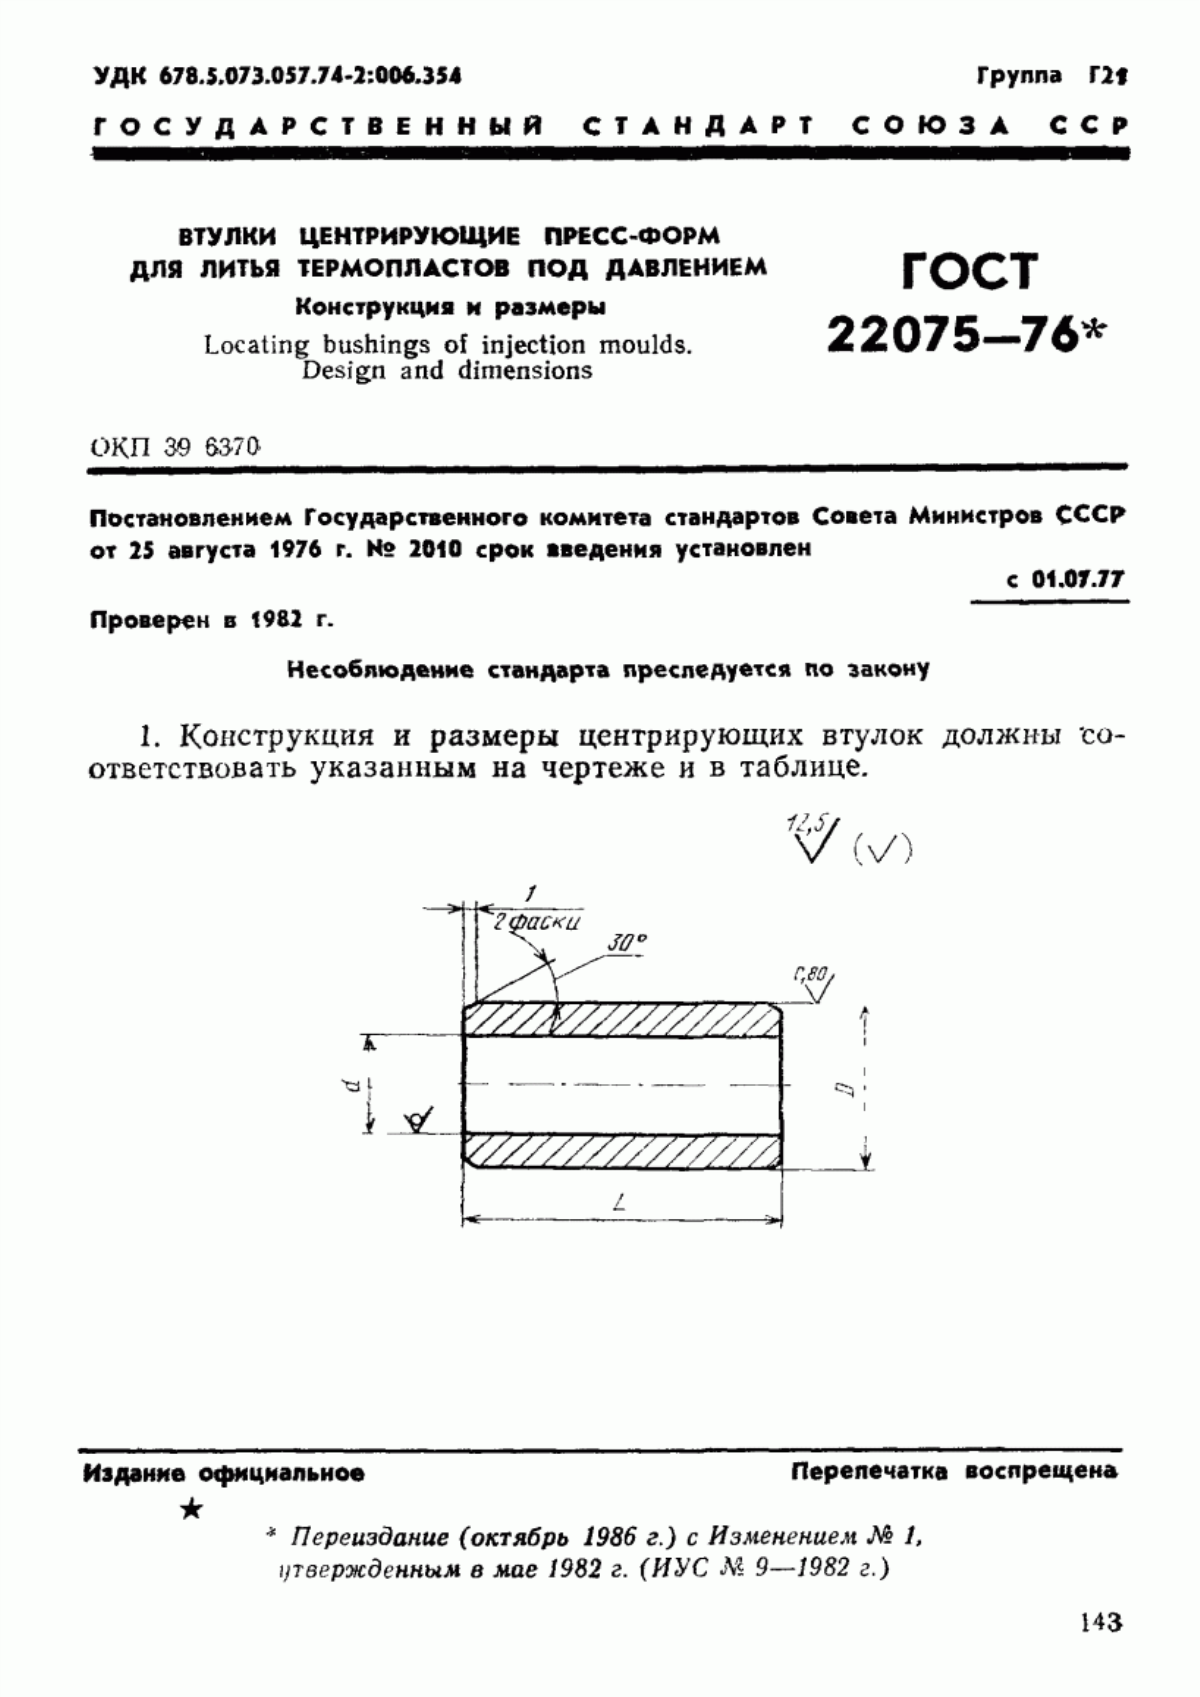 ГОСТ 22075-76 Втулки центрирующие пресс-форм для литья термопластов под давлением. Конструкция и размеры